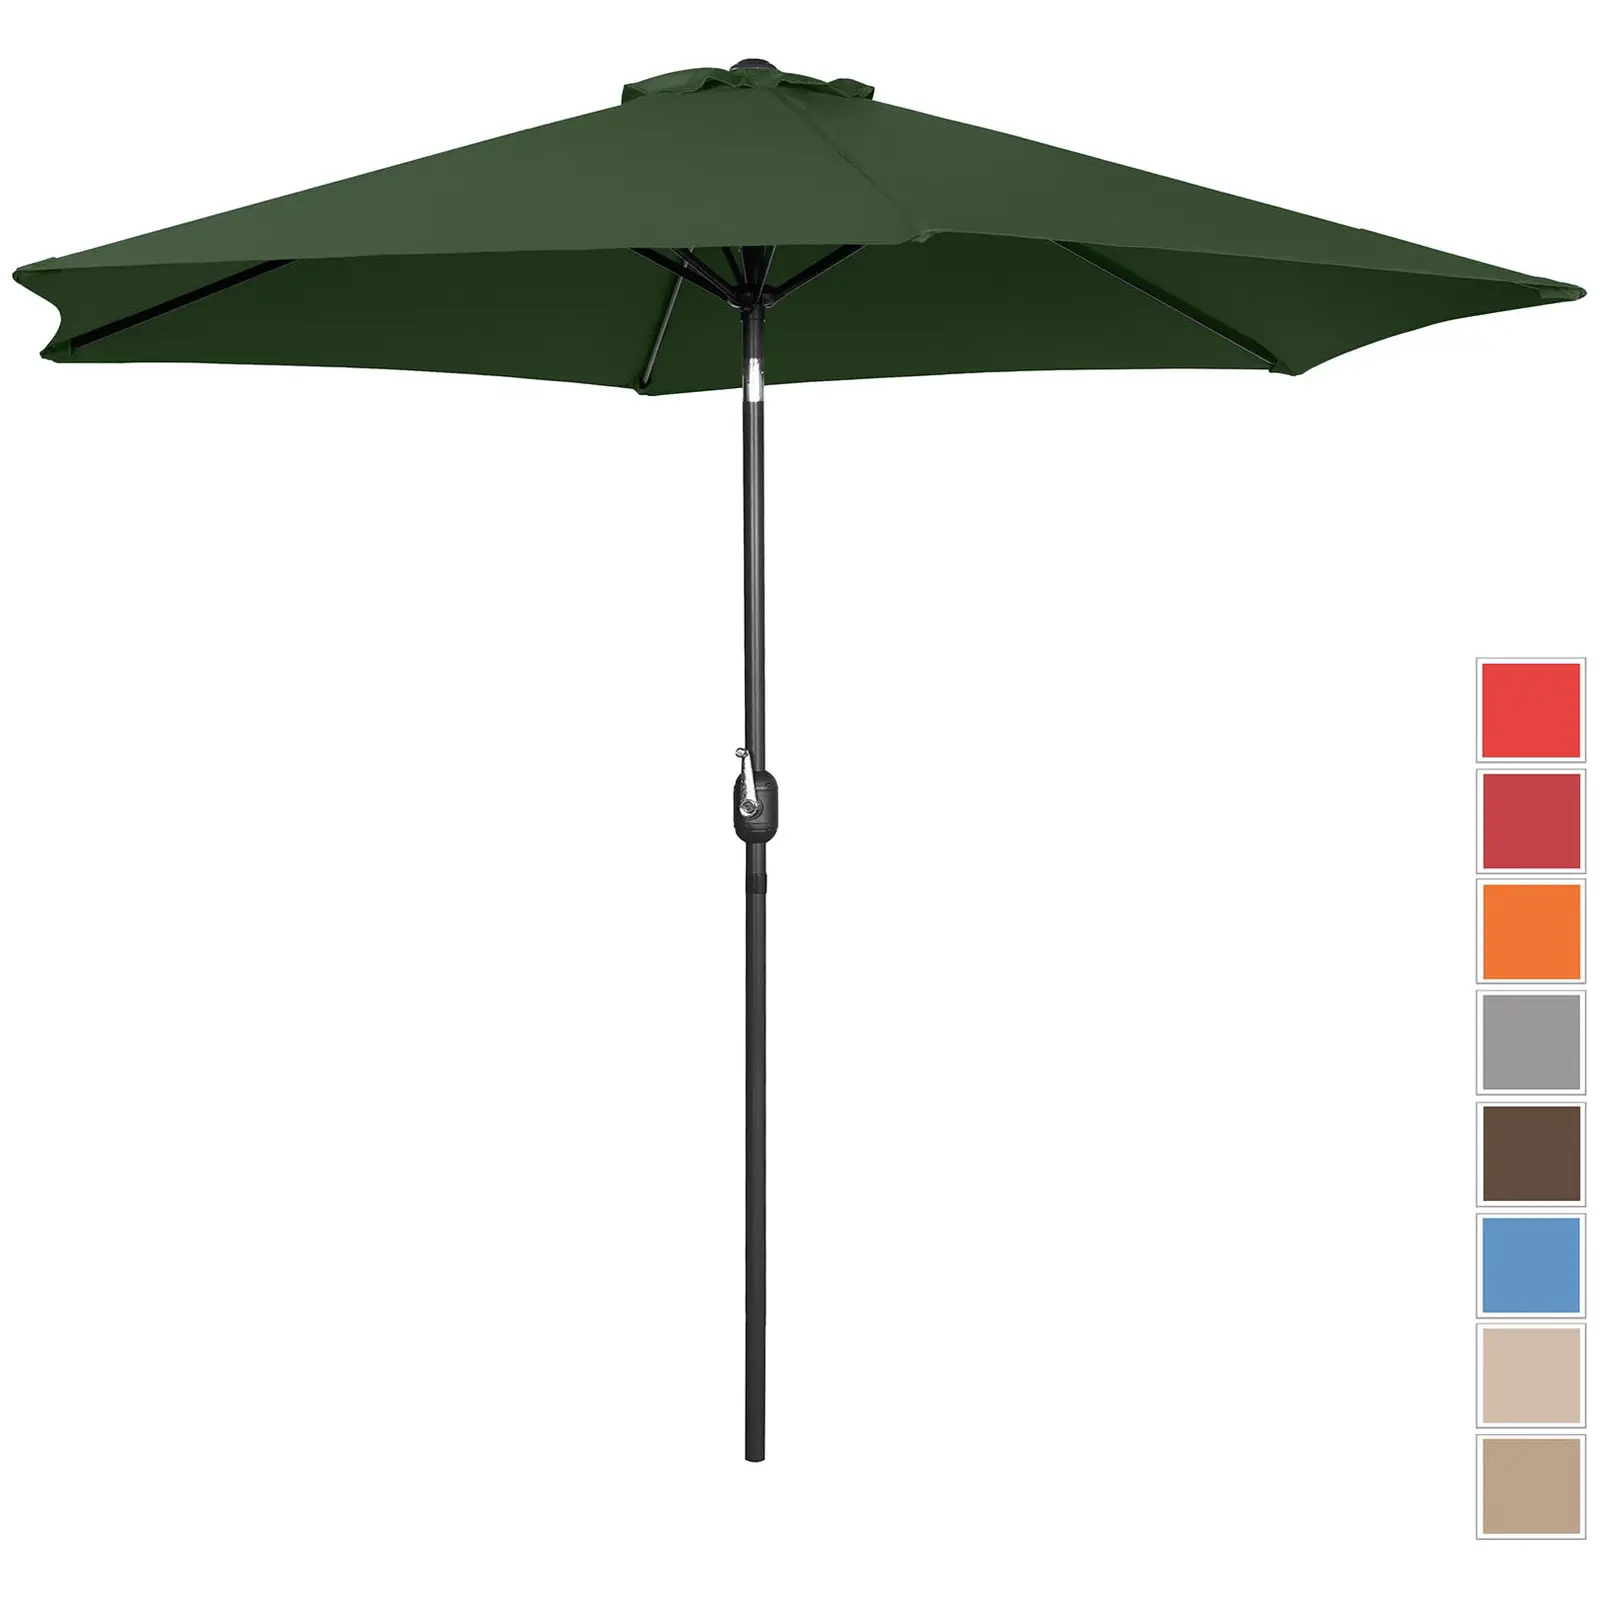 Lauko skėtis - žalias - šešiakampis - Ø 300 cm - pakreipiamas